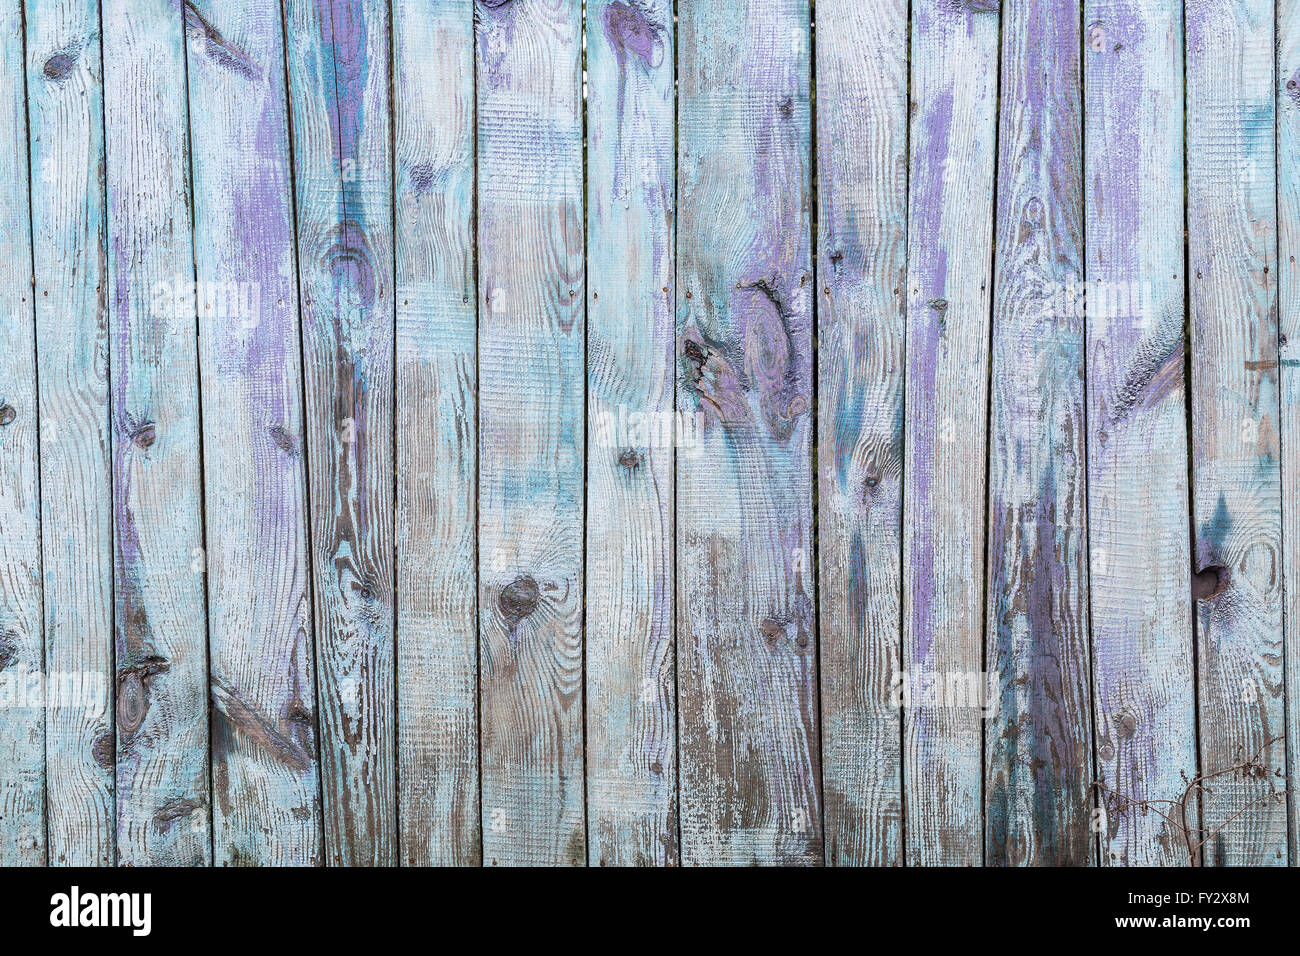 Vecchio Blu staccionata in legno. Immagine della struttura in legno. Foto Stock